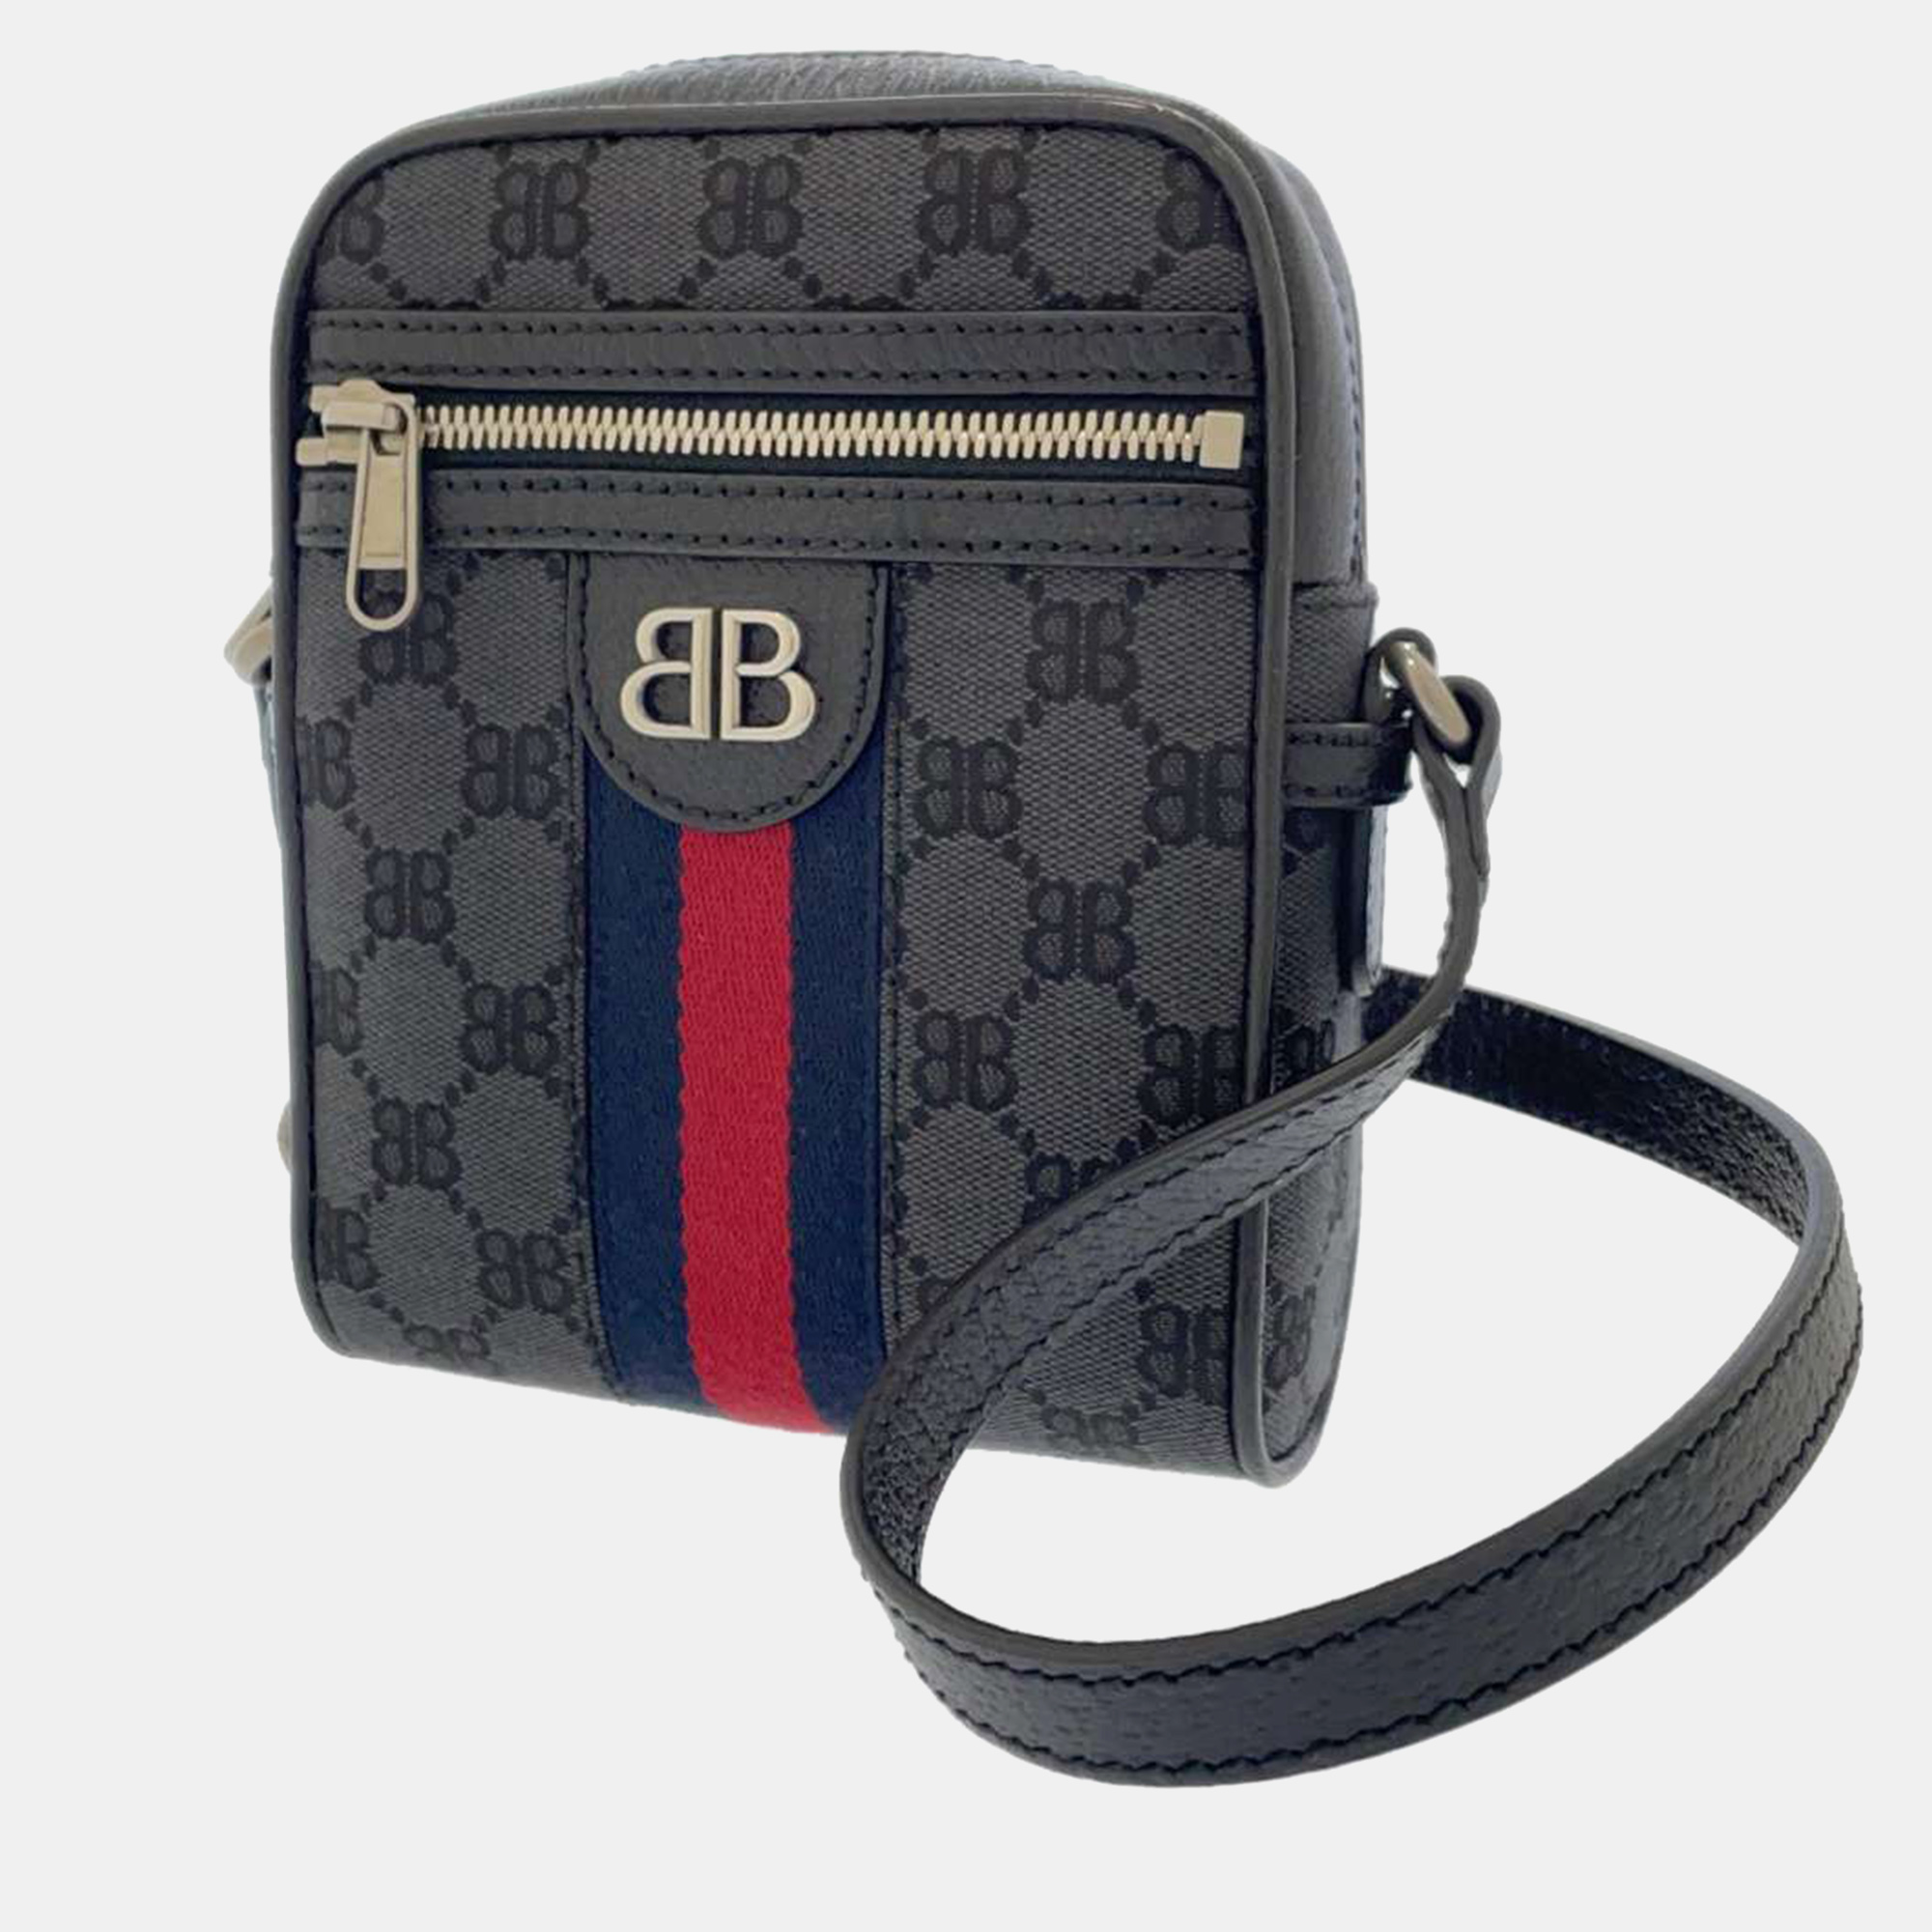 Gucci x balenciaga black bb canvas web mini ophidia phone bag